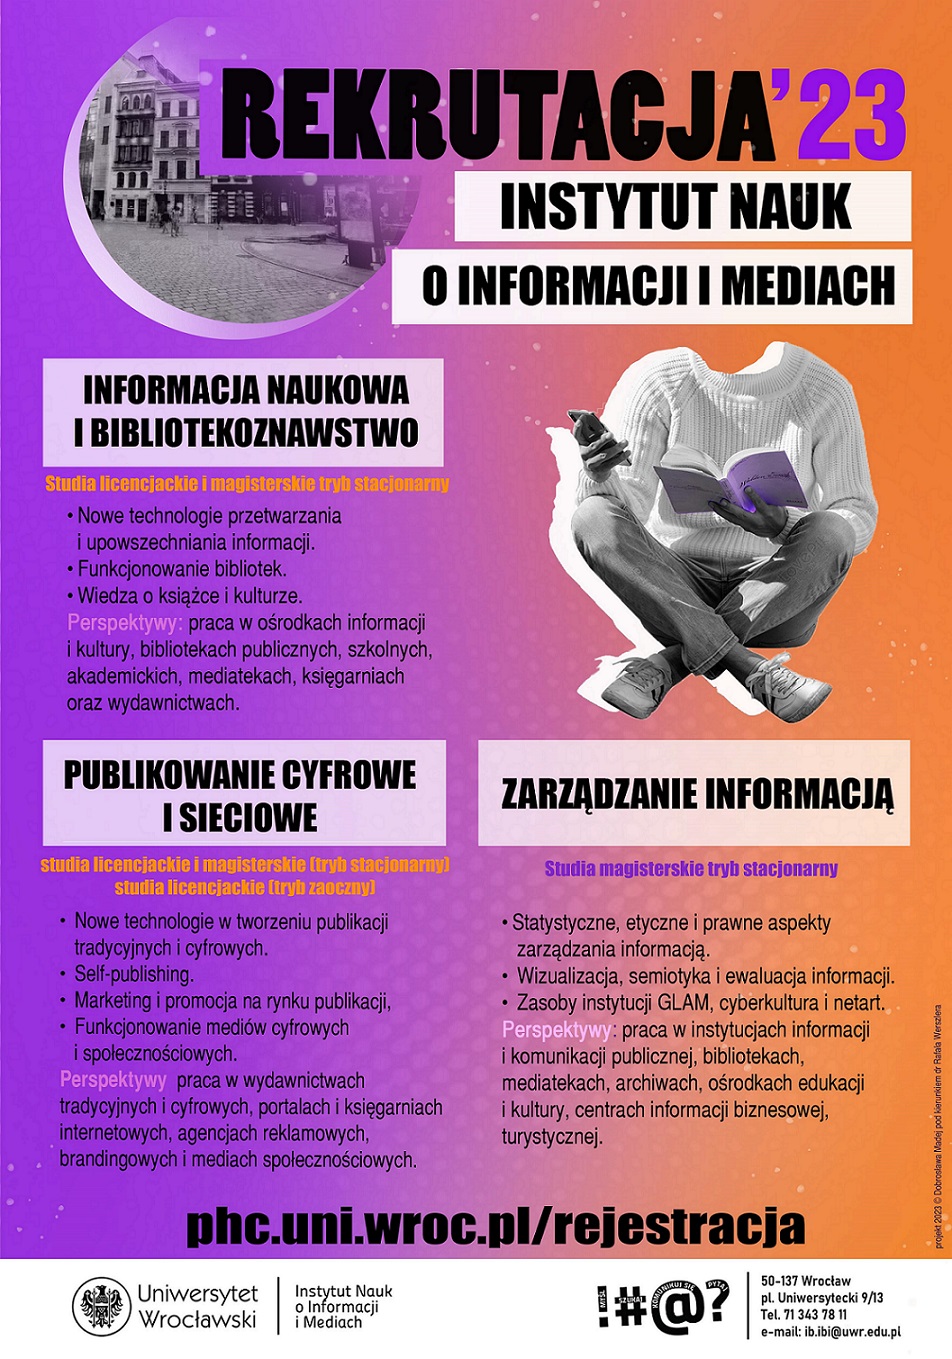 REKRUTACJA'23. Instytut Nauk o Informacji i Mediach Uniwersytetu Wrocławskiego. Plakat promujący kierunki: publikowanie cyfrowe i sieciowe, informacja naukowa i bibliotekoznawstwo, zarządzanie informacją. Plakat jest odnośnikiem do wpisu o ofercie studiów.